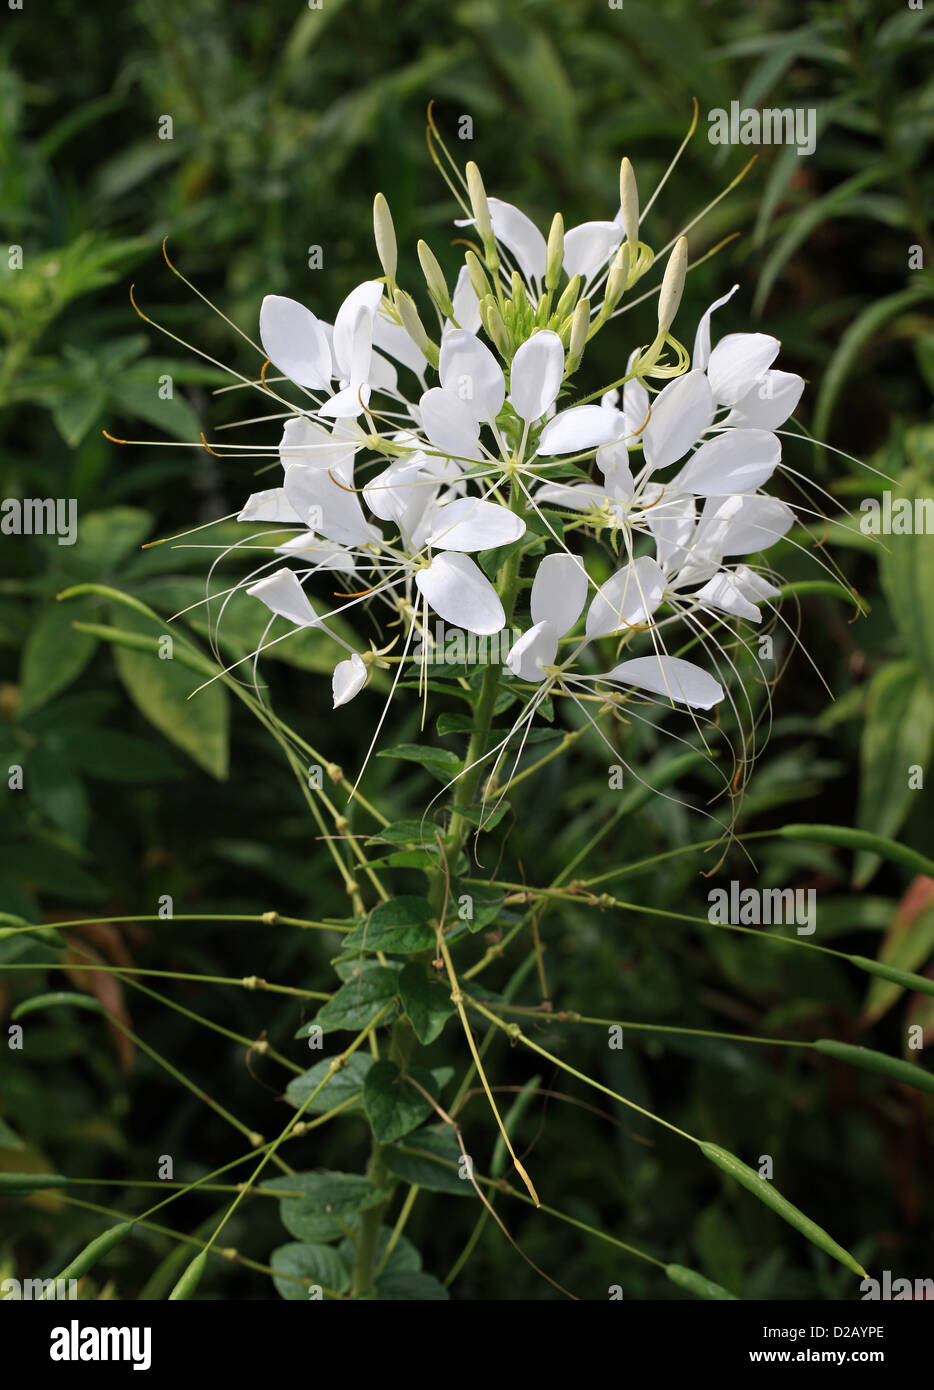 Il Ragno Bianco fiore, Cleome hassleriana (Cleome spinosa " Regina Bianca"), Cleomaceae. Nativo di Sud America meridionale. Foto Stock